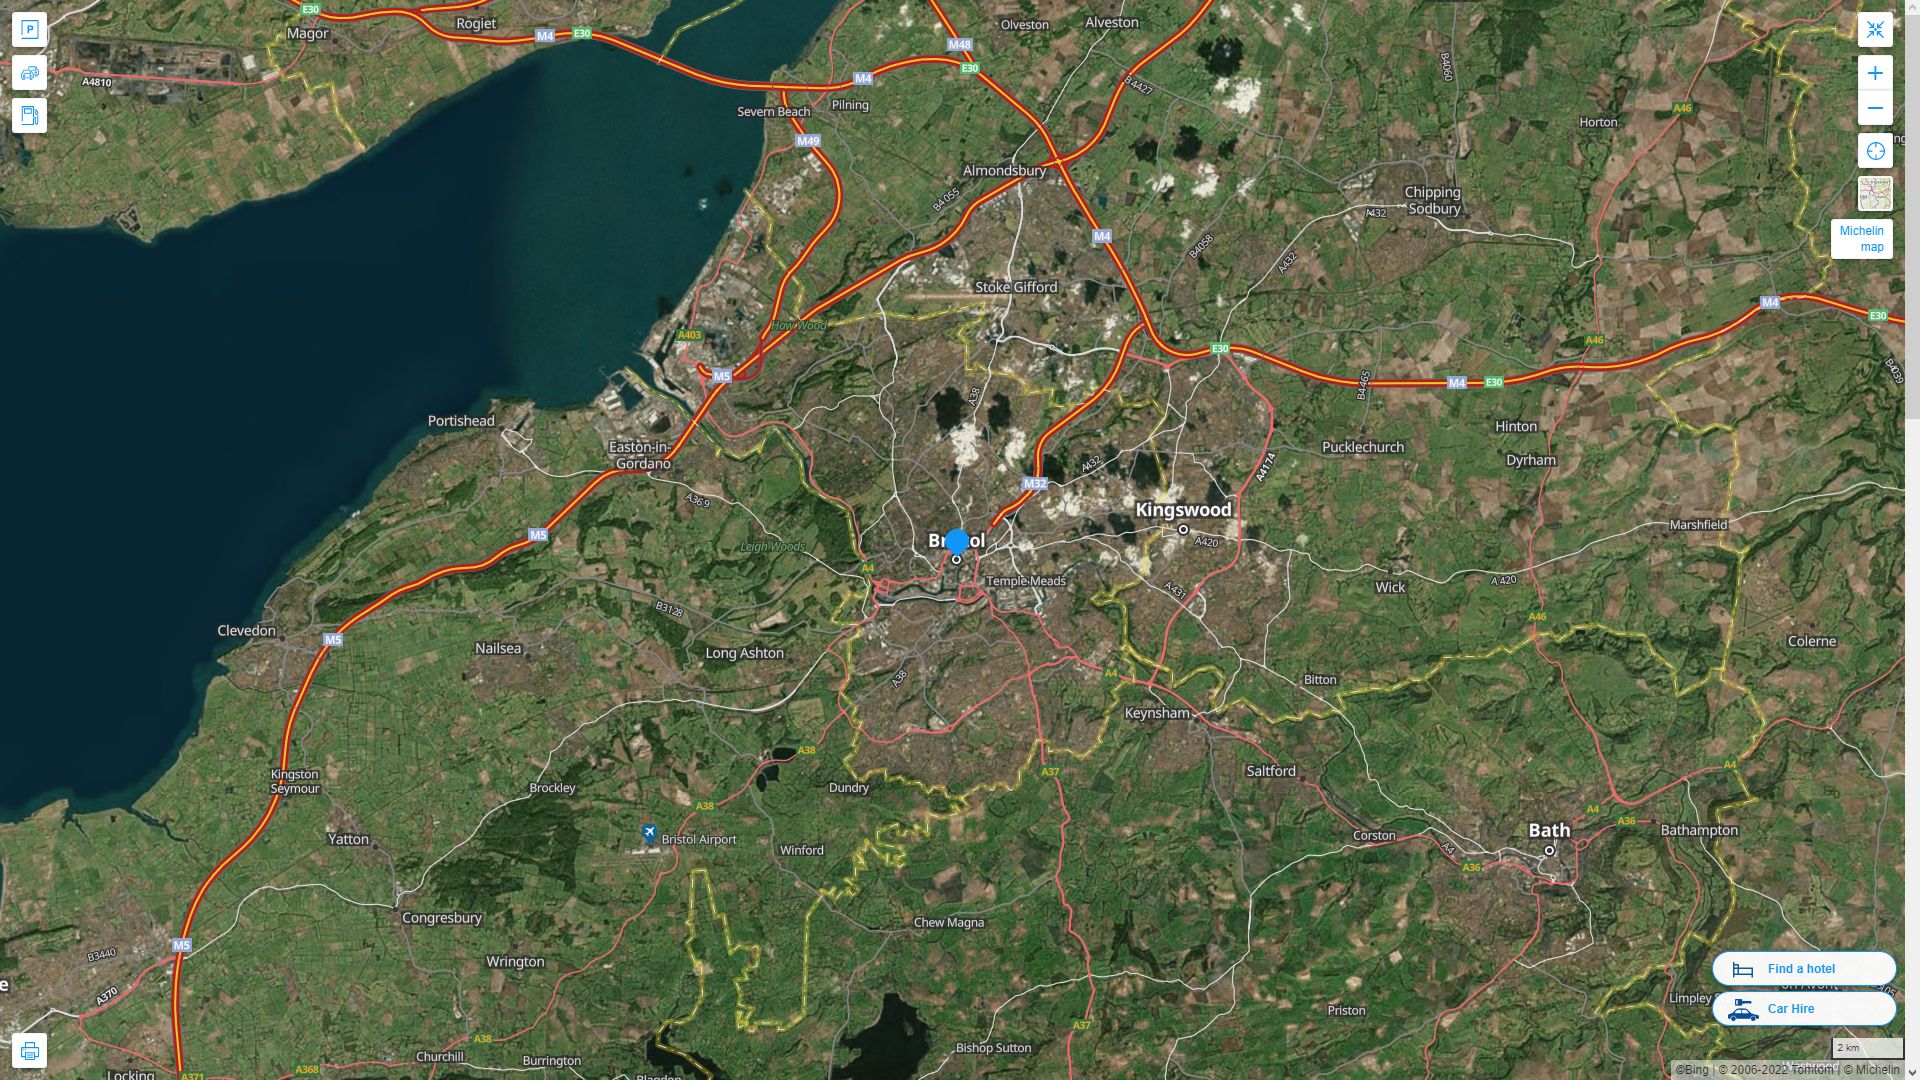 Bristol Royaume Uni Autoroute et carte routiere avec vue satellite